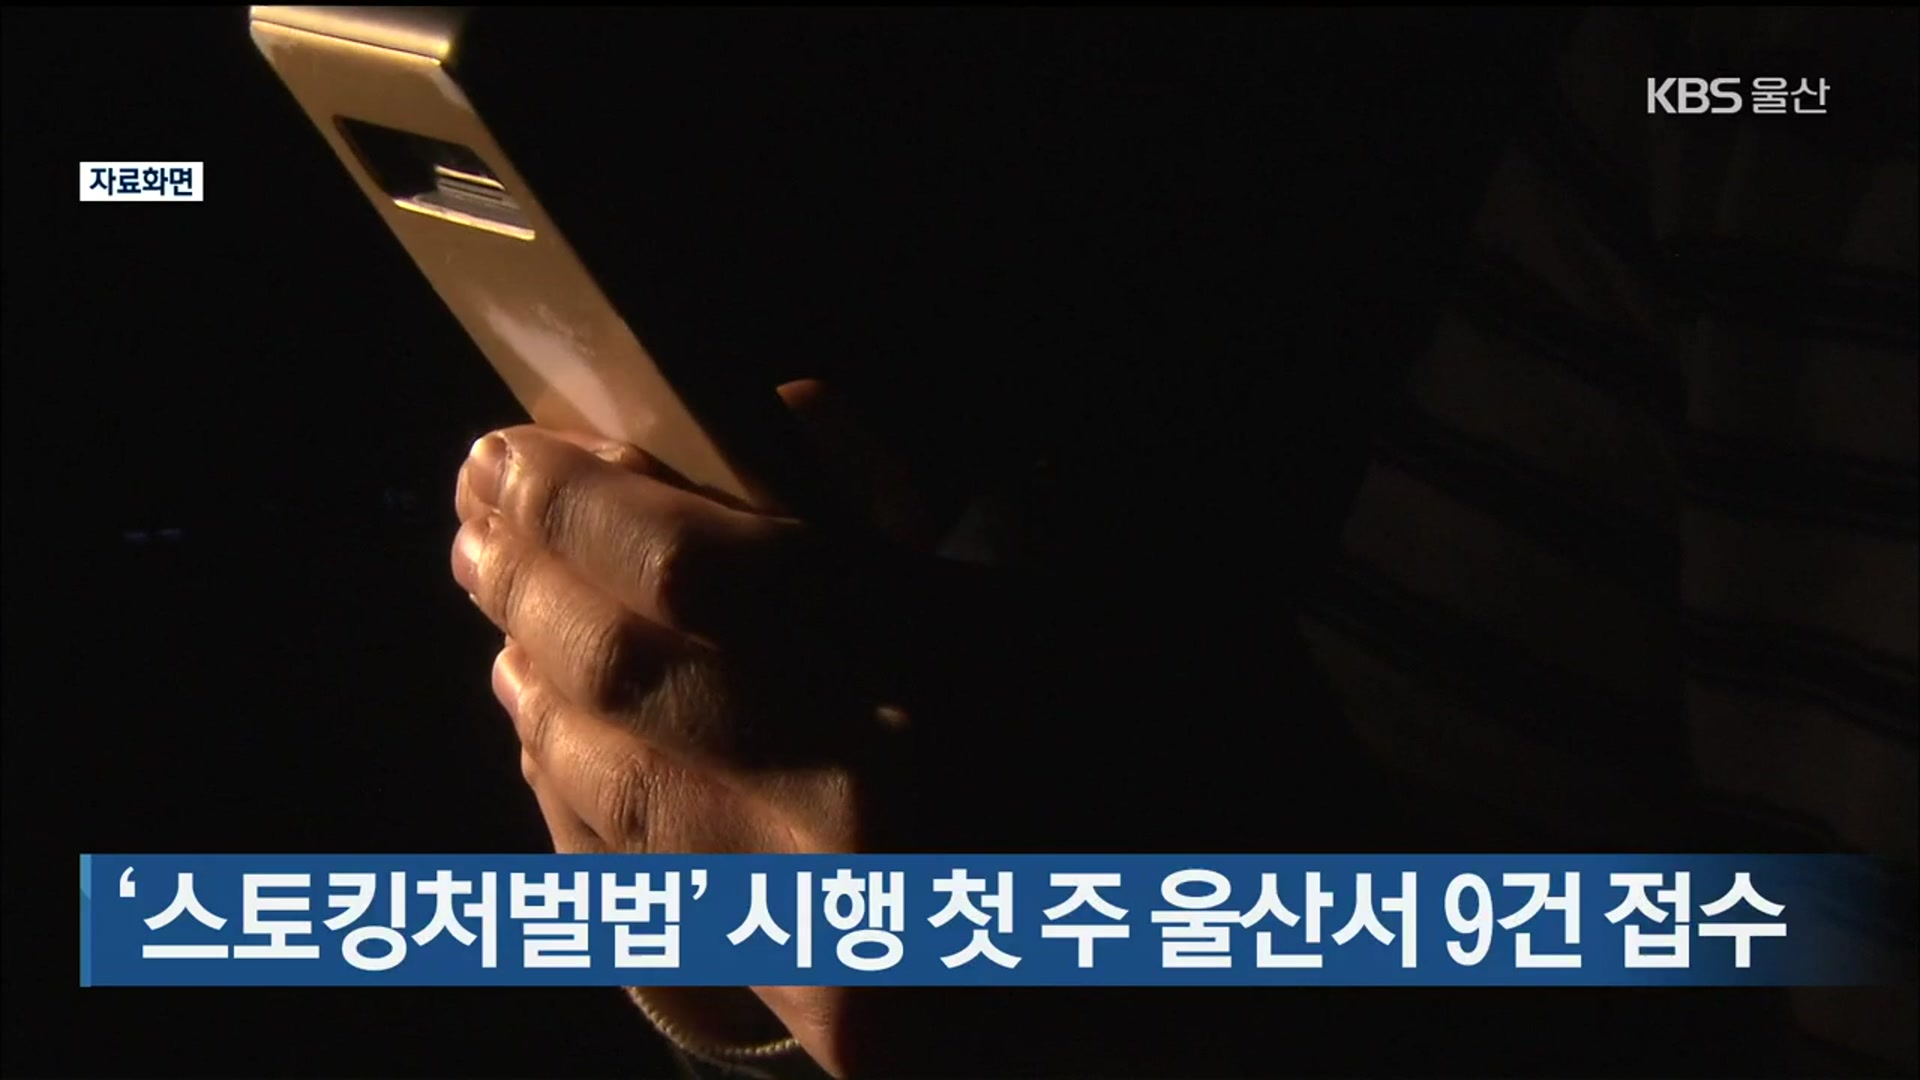 ‘스토킹처벌법’ 시행 첫 주 울산서 9건 접수